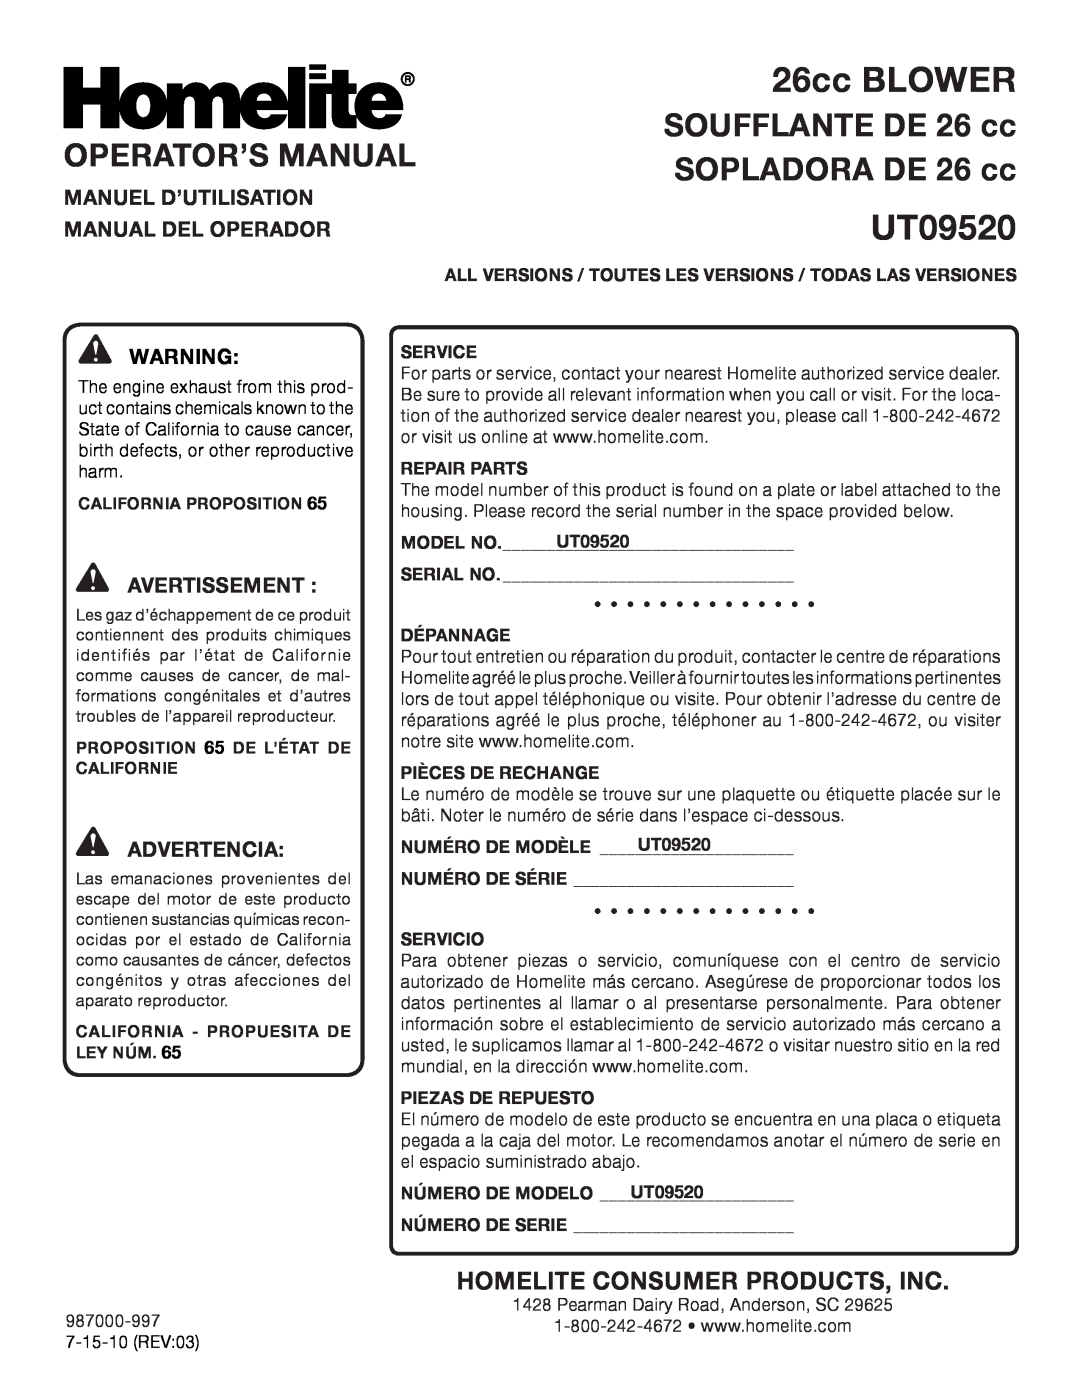 Homelite UT09520 Operator’S Manual, SOPLADORA DE 26 cc, Manuel D’Utilisation, Manual Del Operador, 26cc BLOWER, Model No 